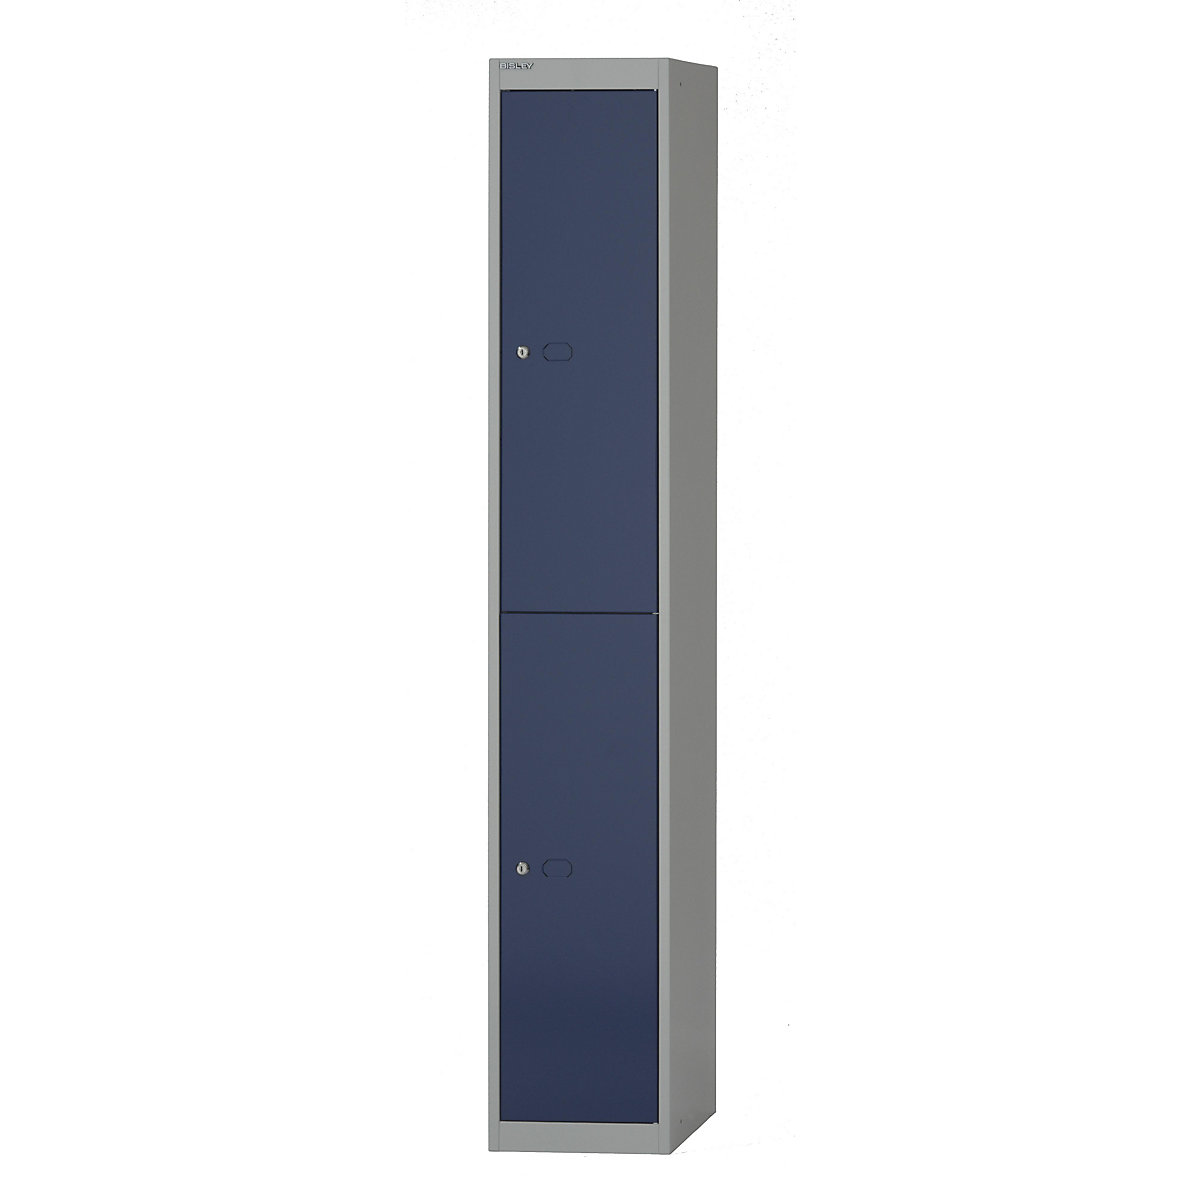 BISLEY OFFICE Garderobensystem, Tiefe 457 mm, 2 Fächer mit je 1 Kleiderhaken, Korpusfarbe Lichtgrau, Türfarbe Oxfordblau